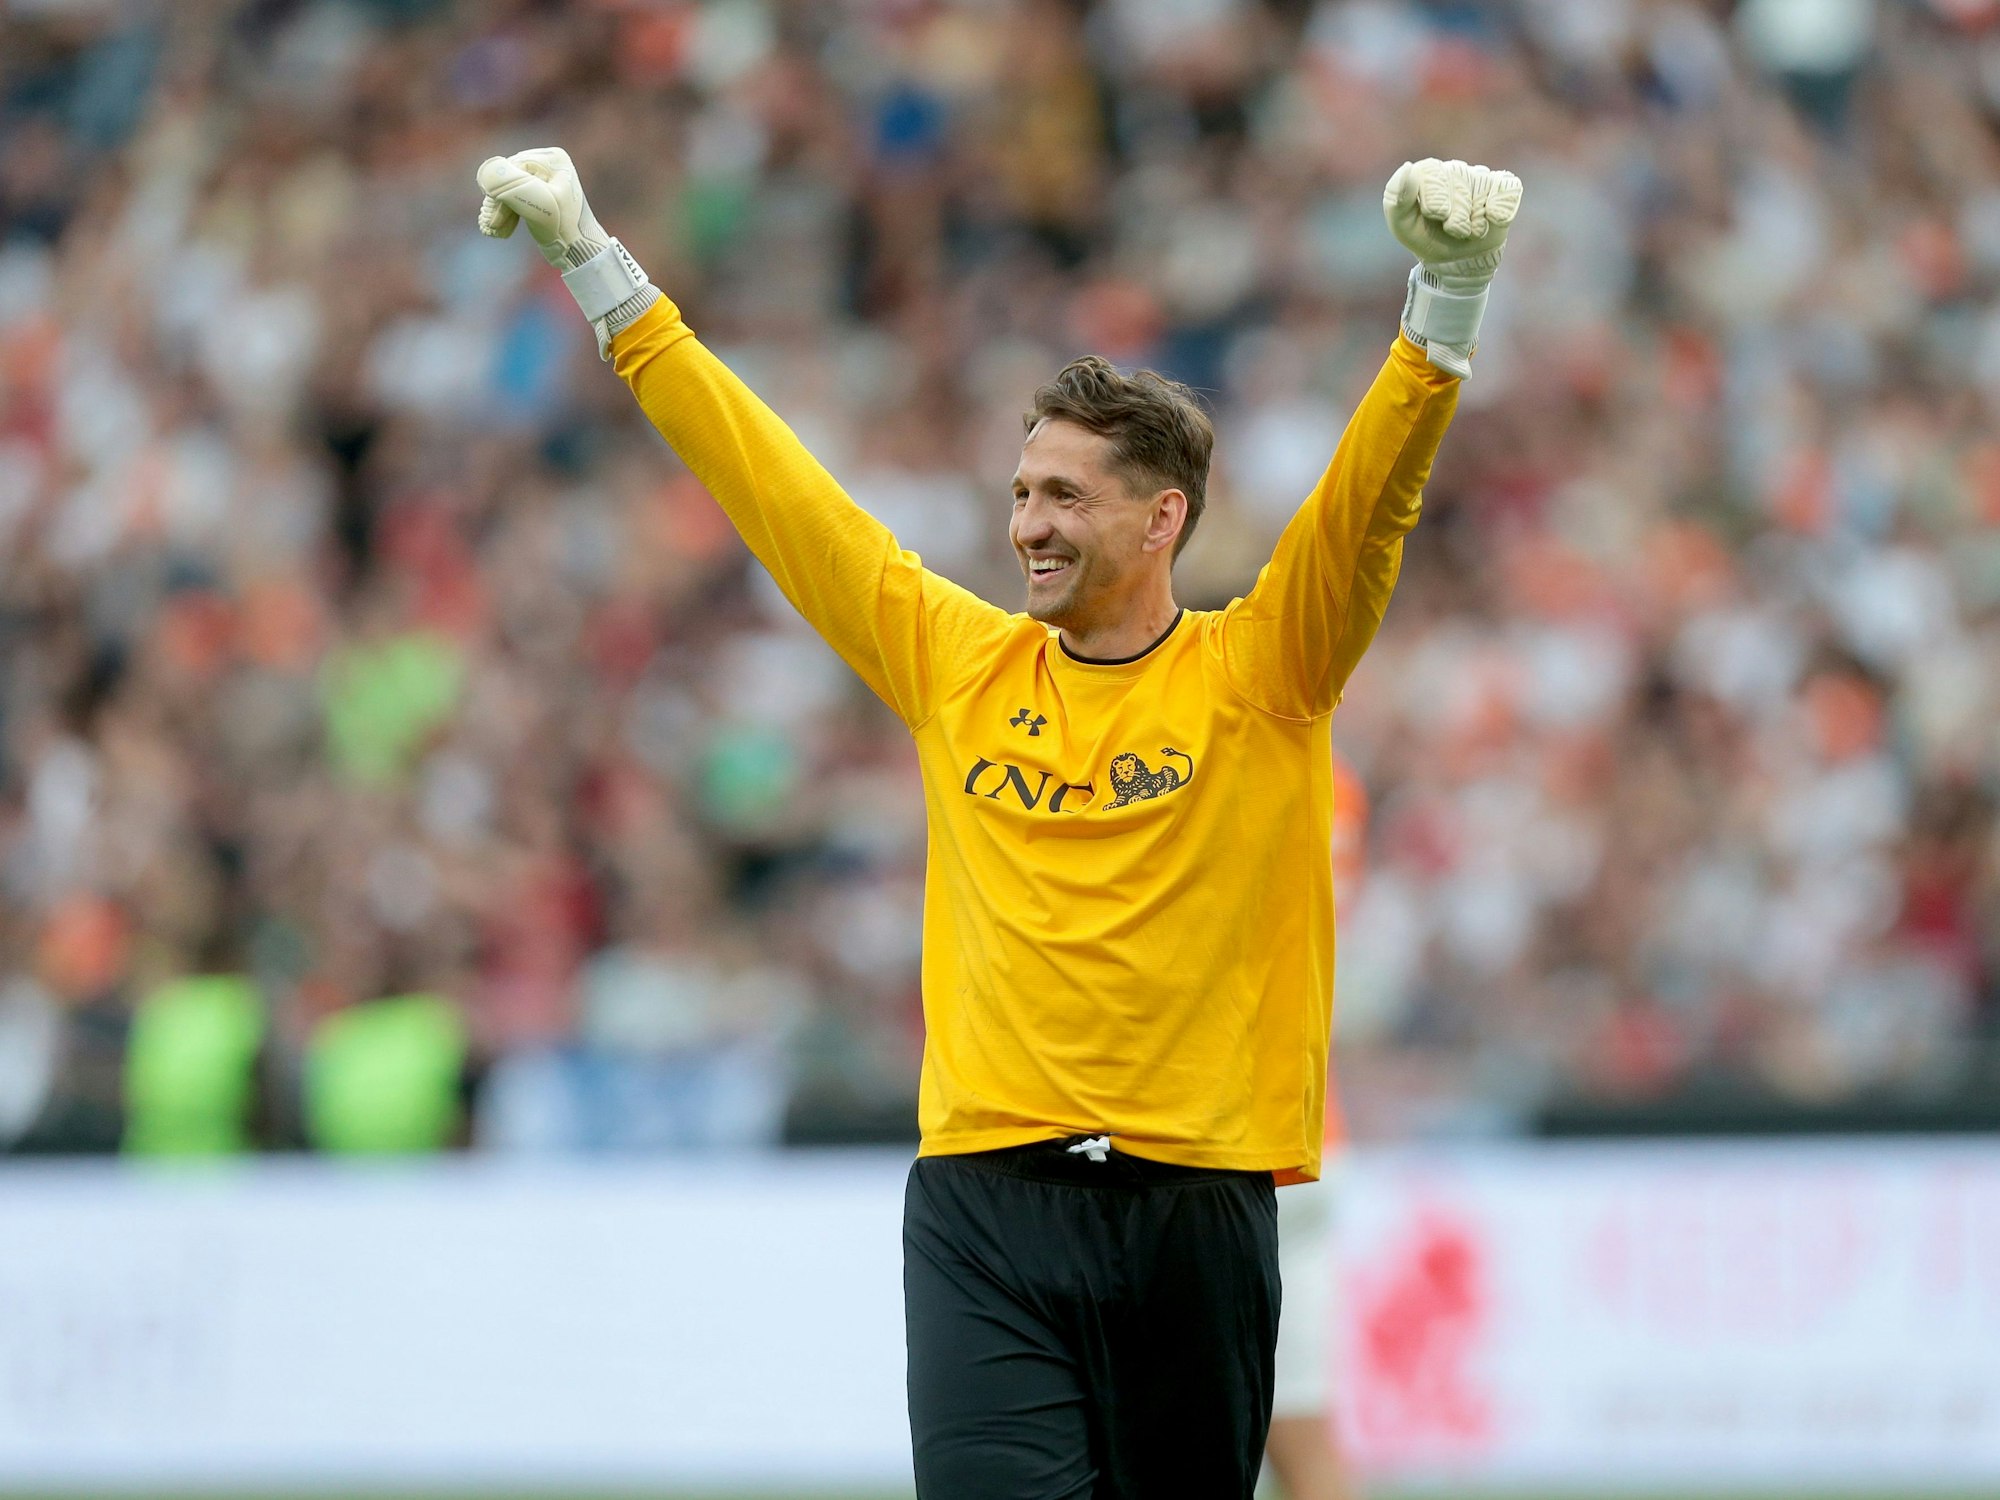 Rene Adler freut sich während des Champions for Charity 2022 Benefizspiels in Frankfurt, indem er die Arme in die Höhe reckt.